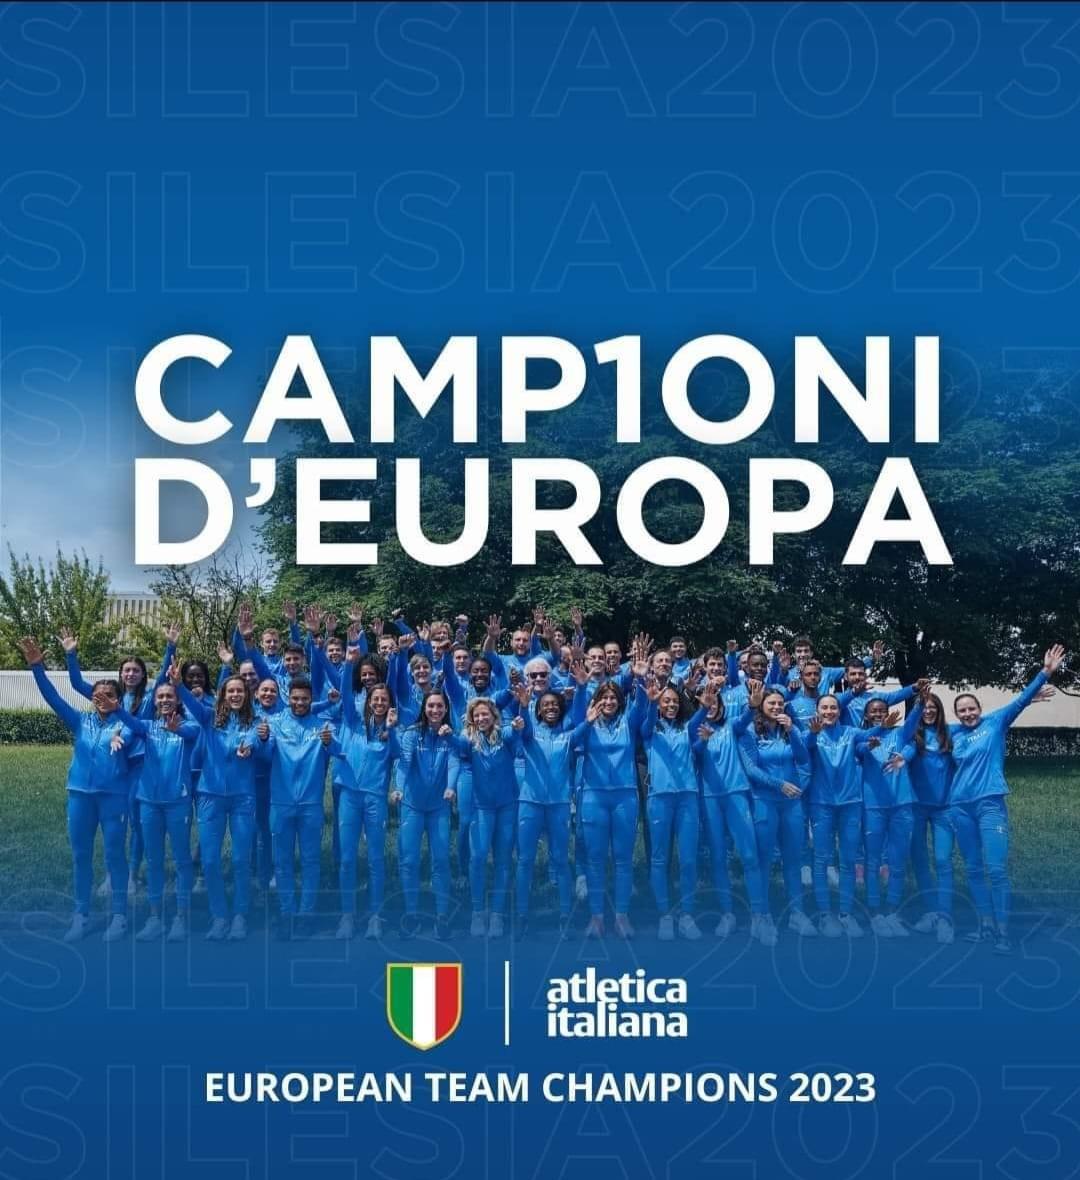 L'Italia ha vinto gli Europei a squadre in Polonia per la prima volta nella storia
Congratulazioni a tutti gli atleti azzurri, agli staff e ad @atleticaitalia per questo risultato straordinario
Siamo impazienti di vedervi gareggiare a #Roma2024 la prossima estate!

#silesia2023